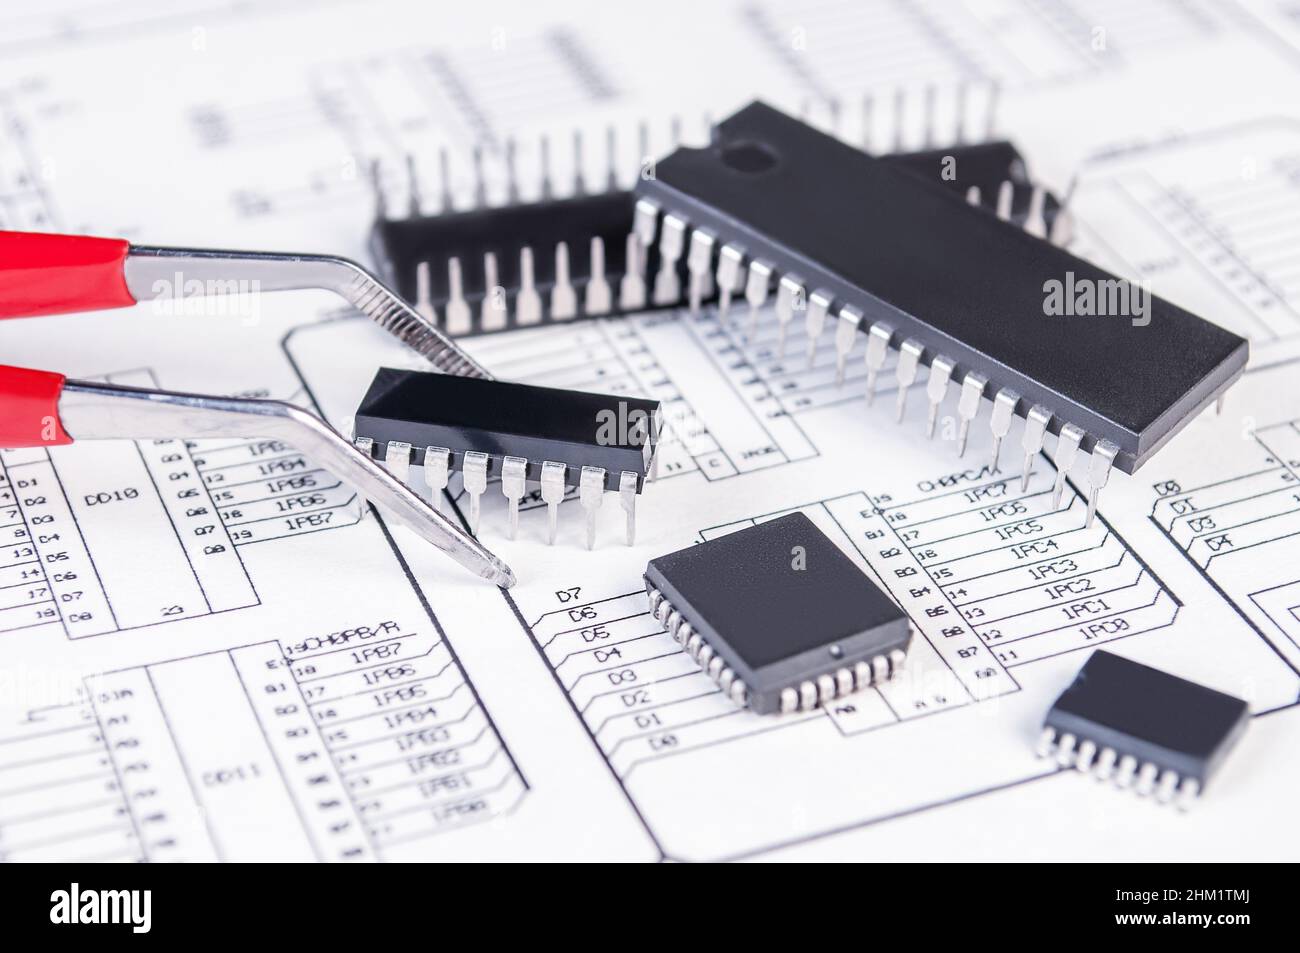 Elektronikkomponenten und Pinzetten auf dem Hintergrund des Schaltplans. Konzept für die Entwicklung und Konstruktion von elektronischen Geräten. Stockfoto